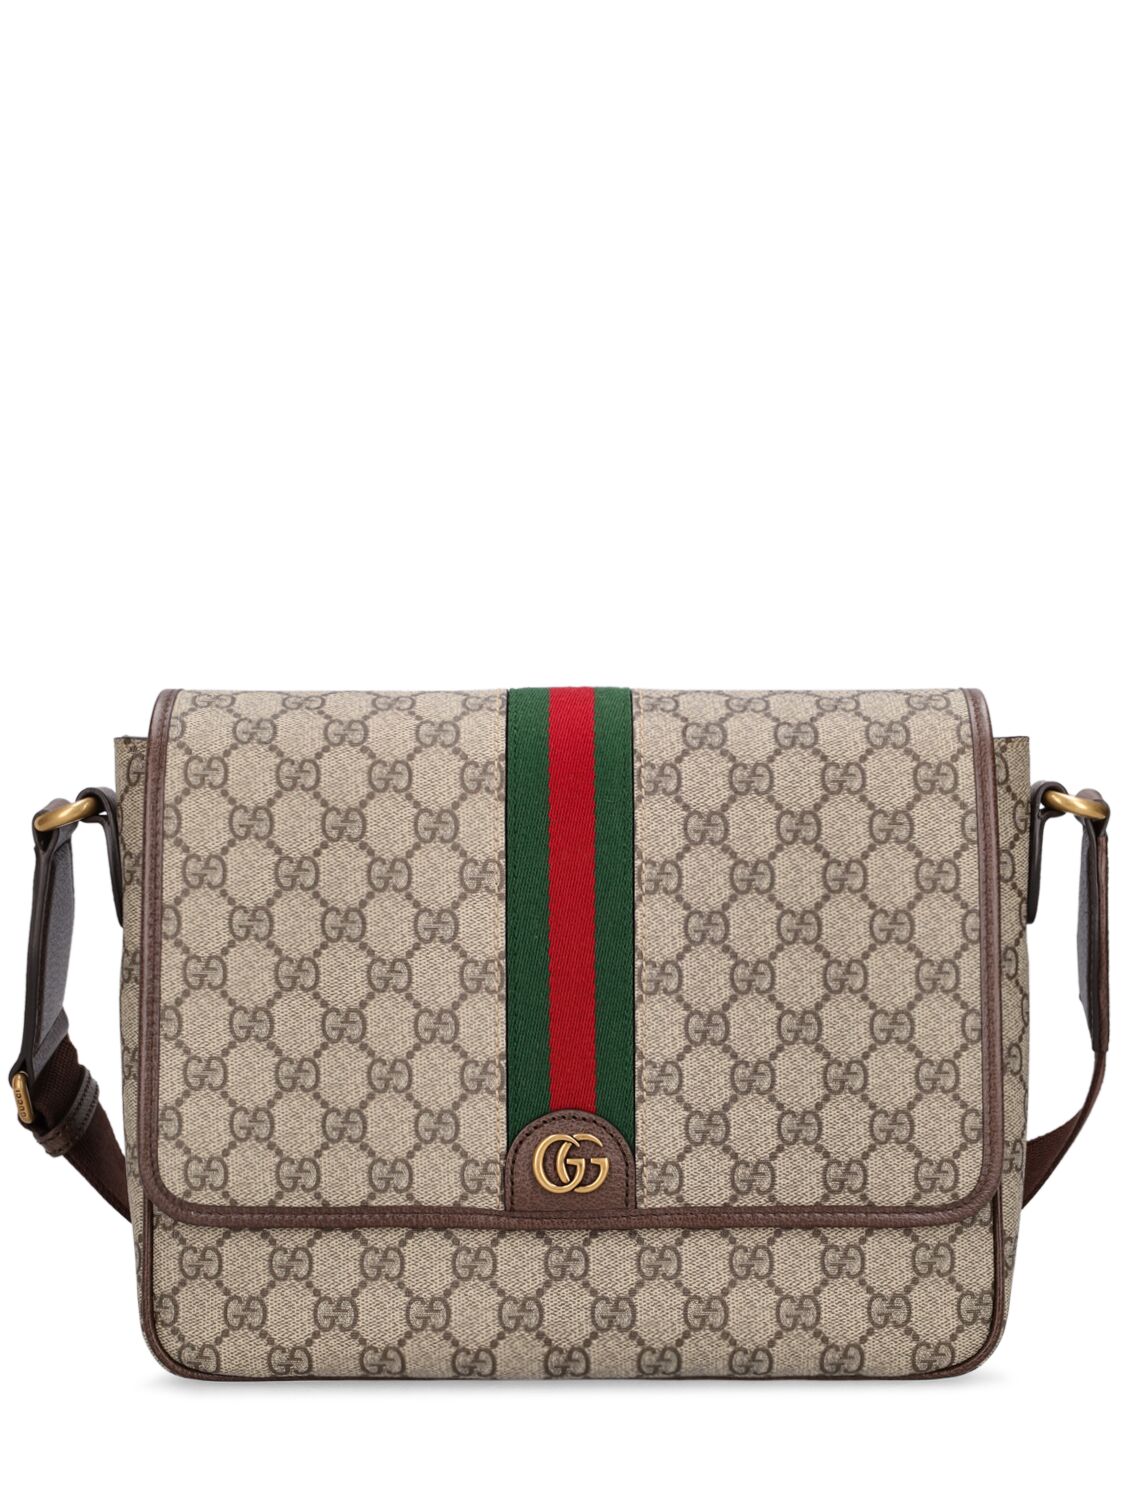 Gucci Ophidia Gg Supreme Medium Crossbody Bag In Beige,ebony